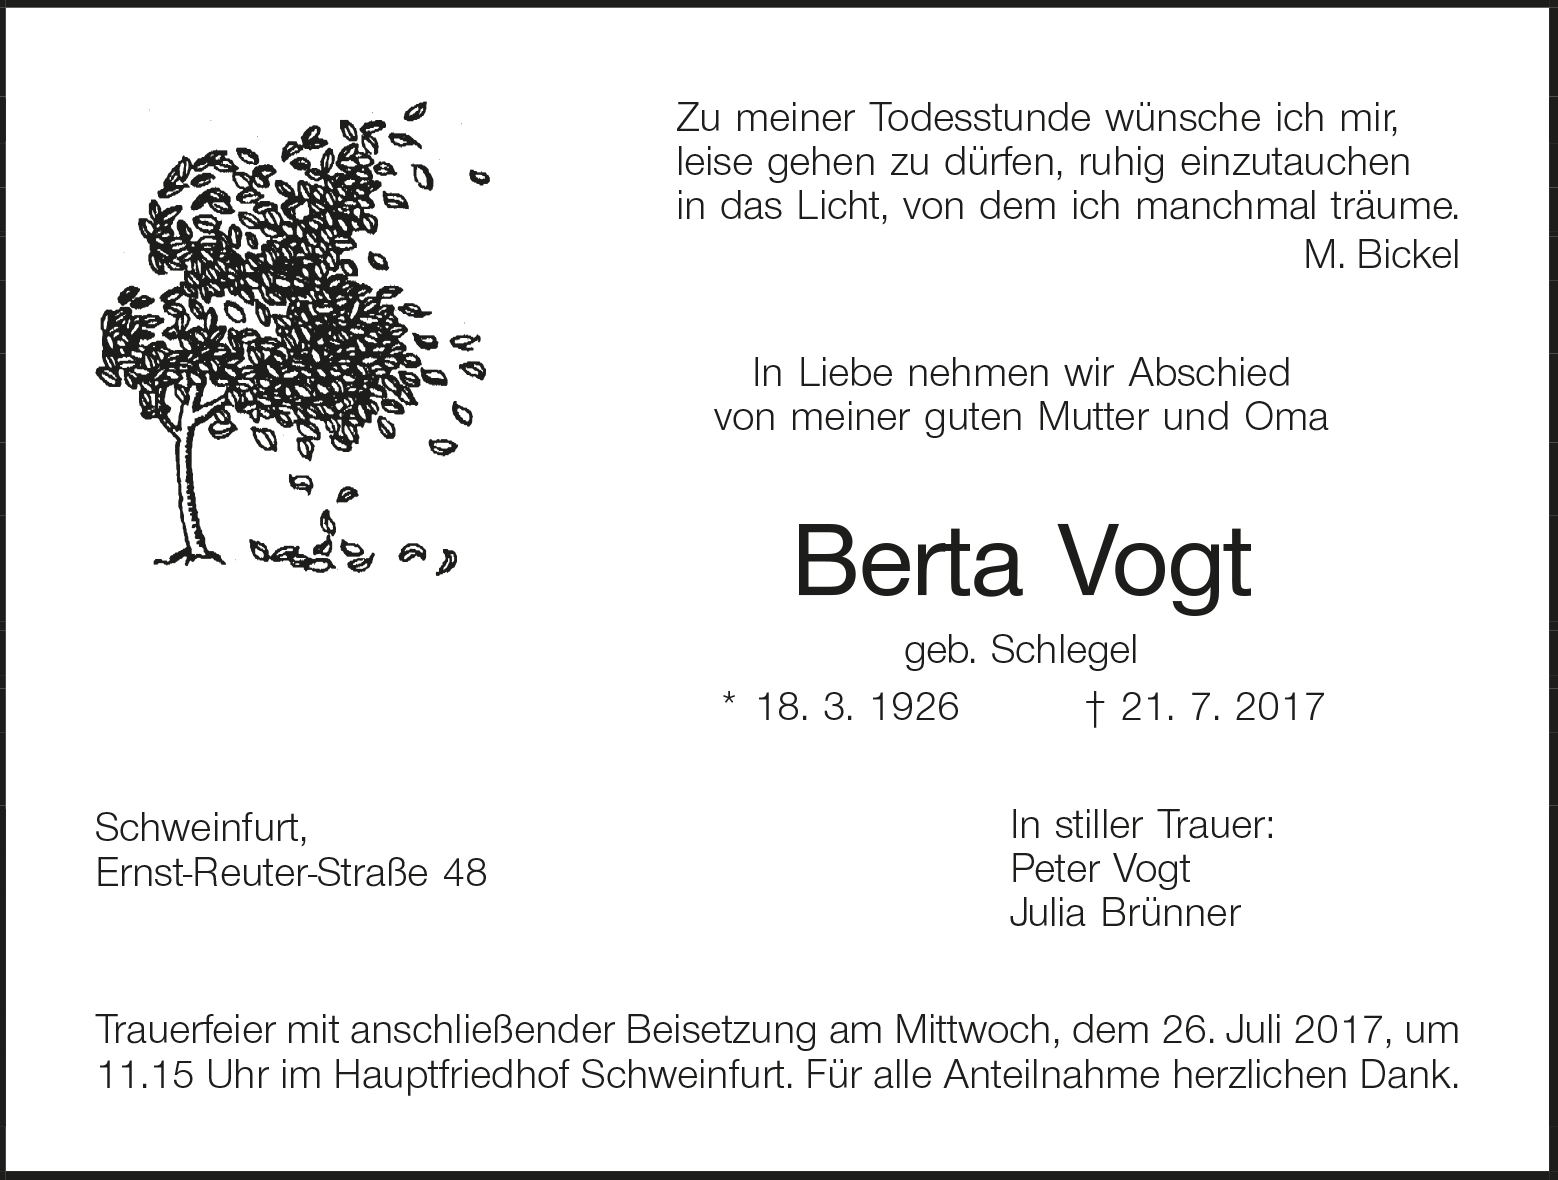 BErta Vogt